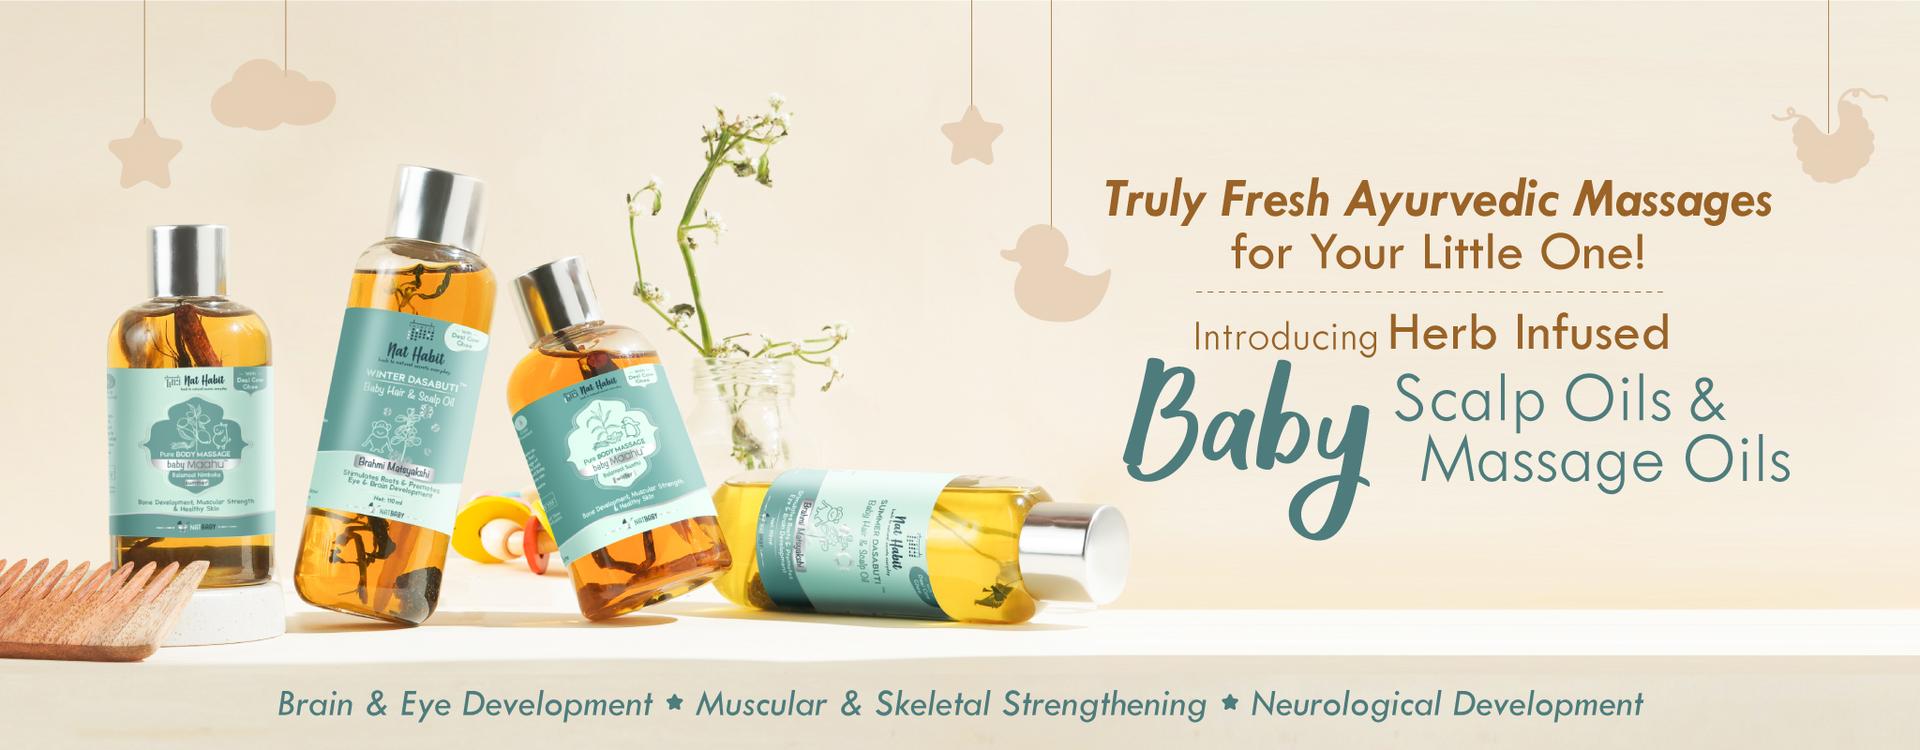 baby-launch-website-banner